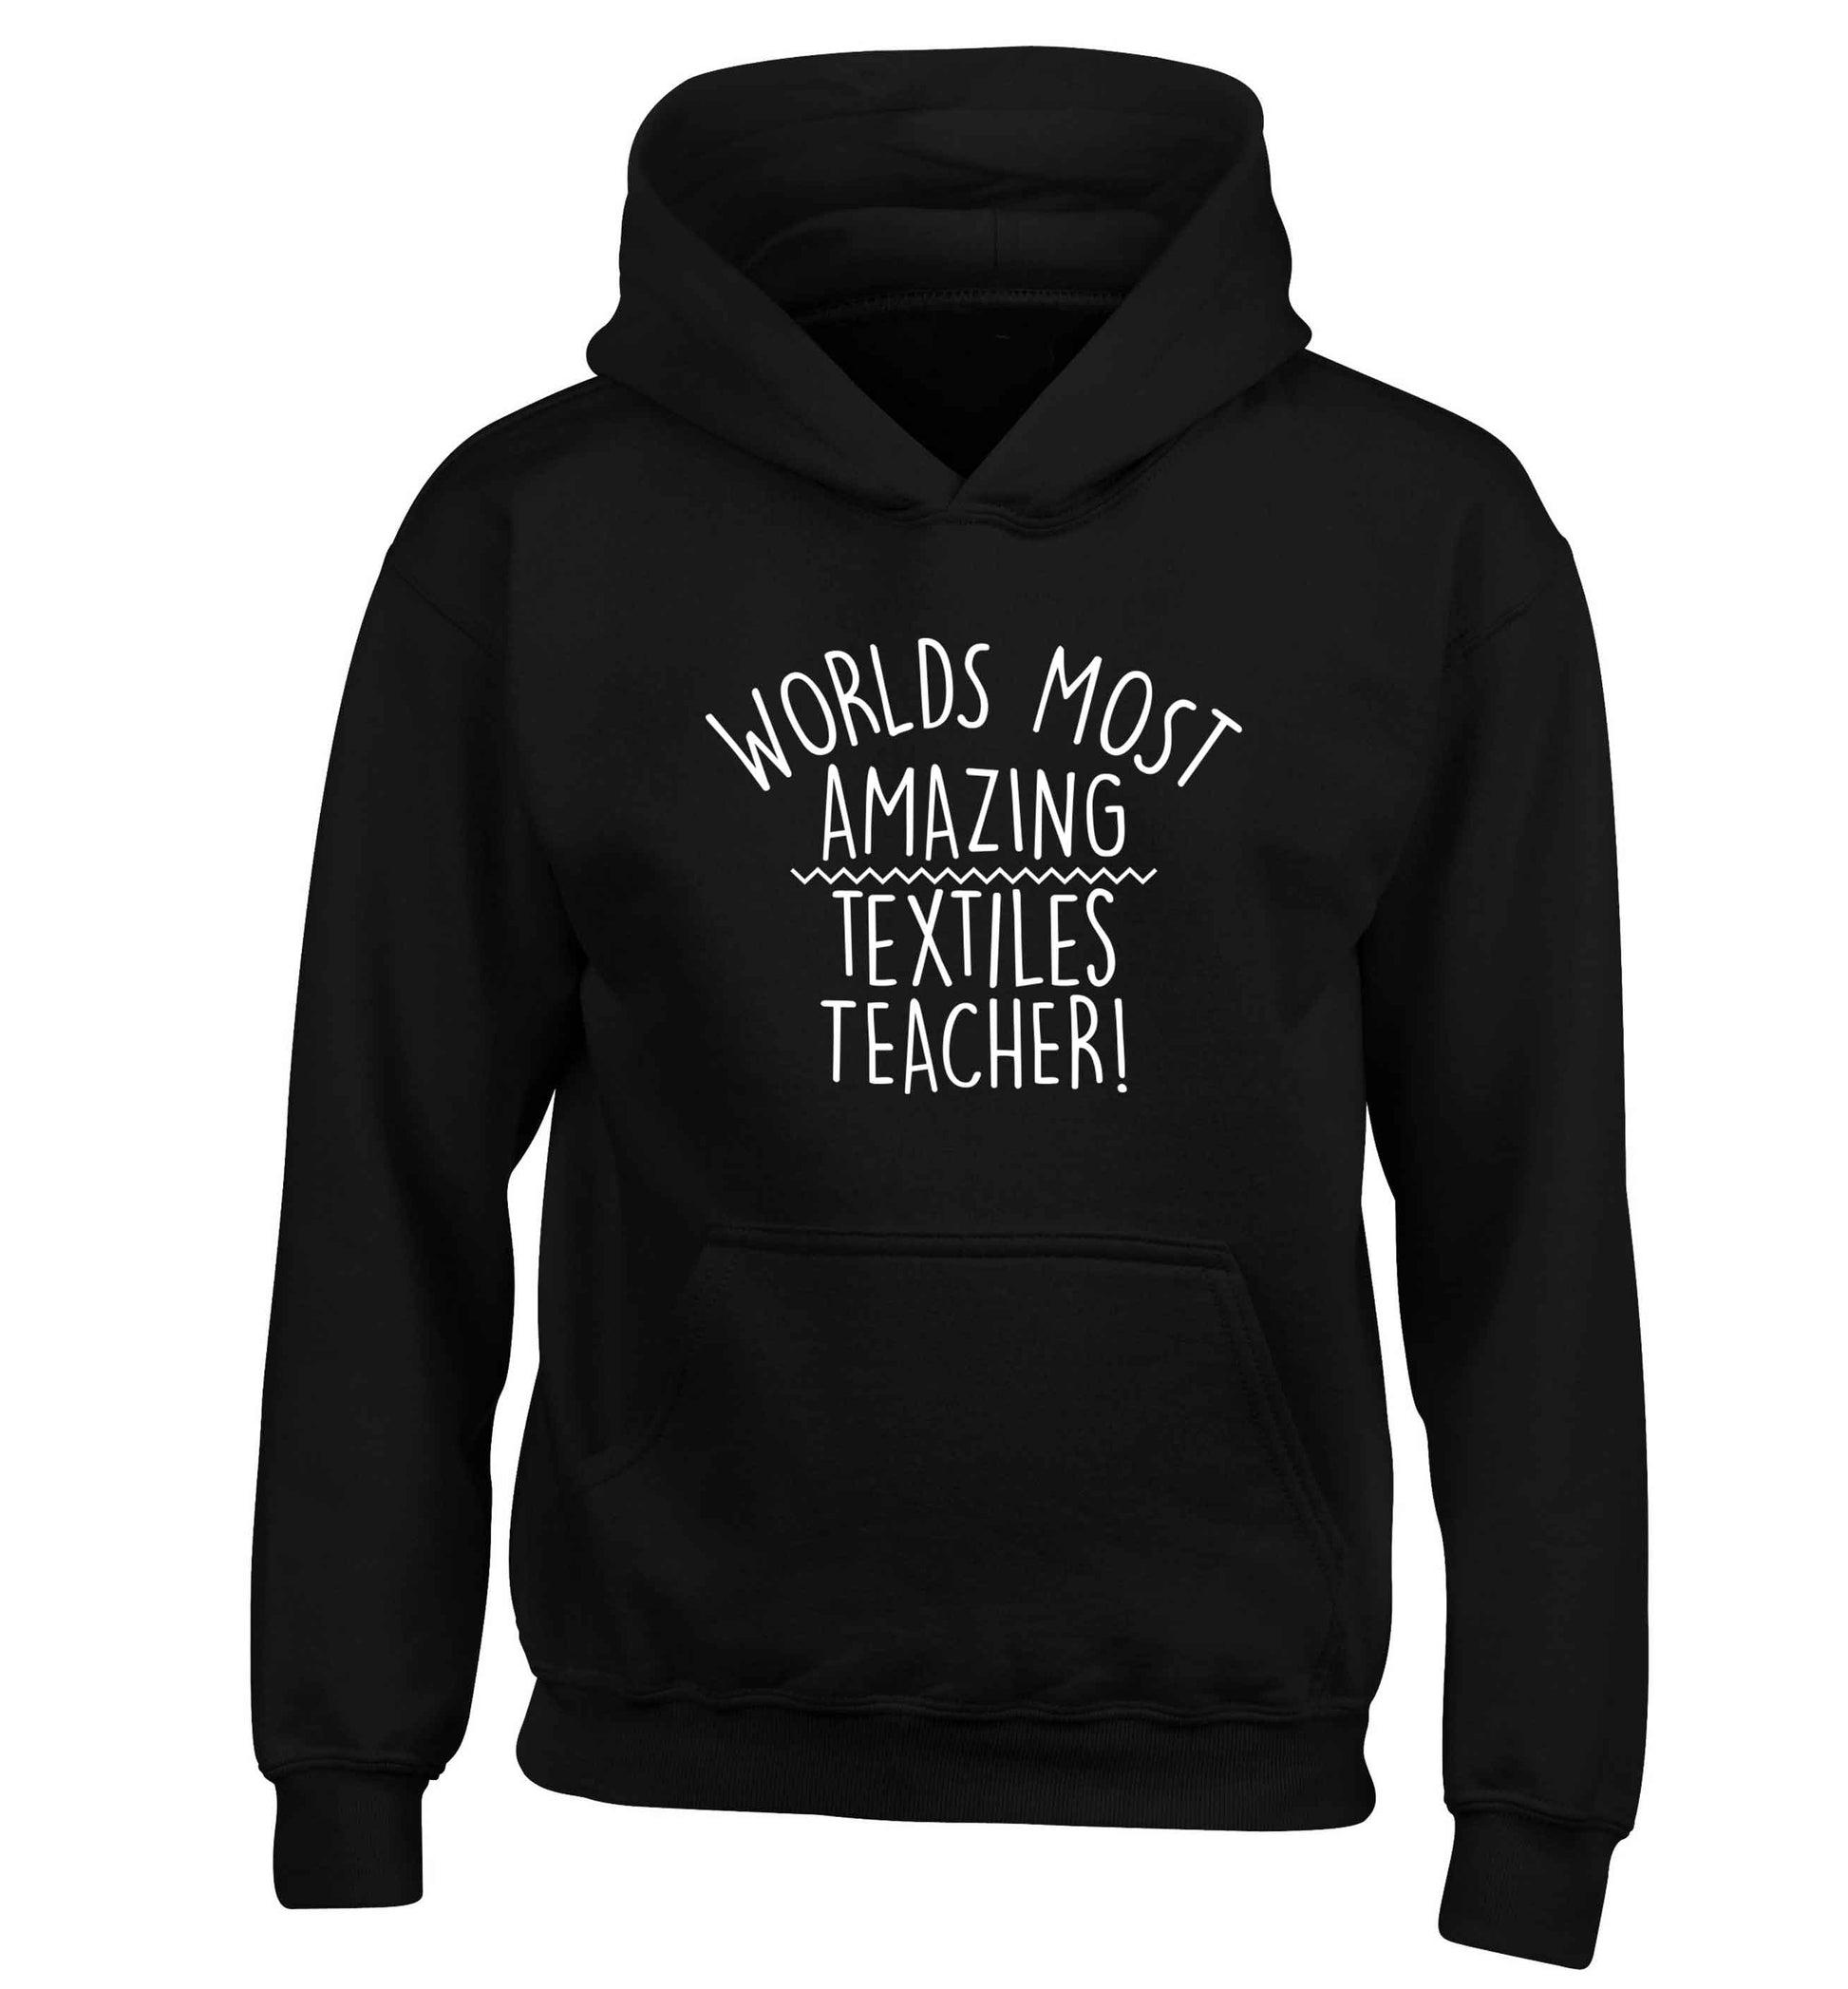 Worlds most amazing textiles teacher children's black hoodie 12-13 Years